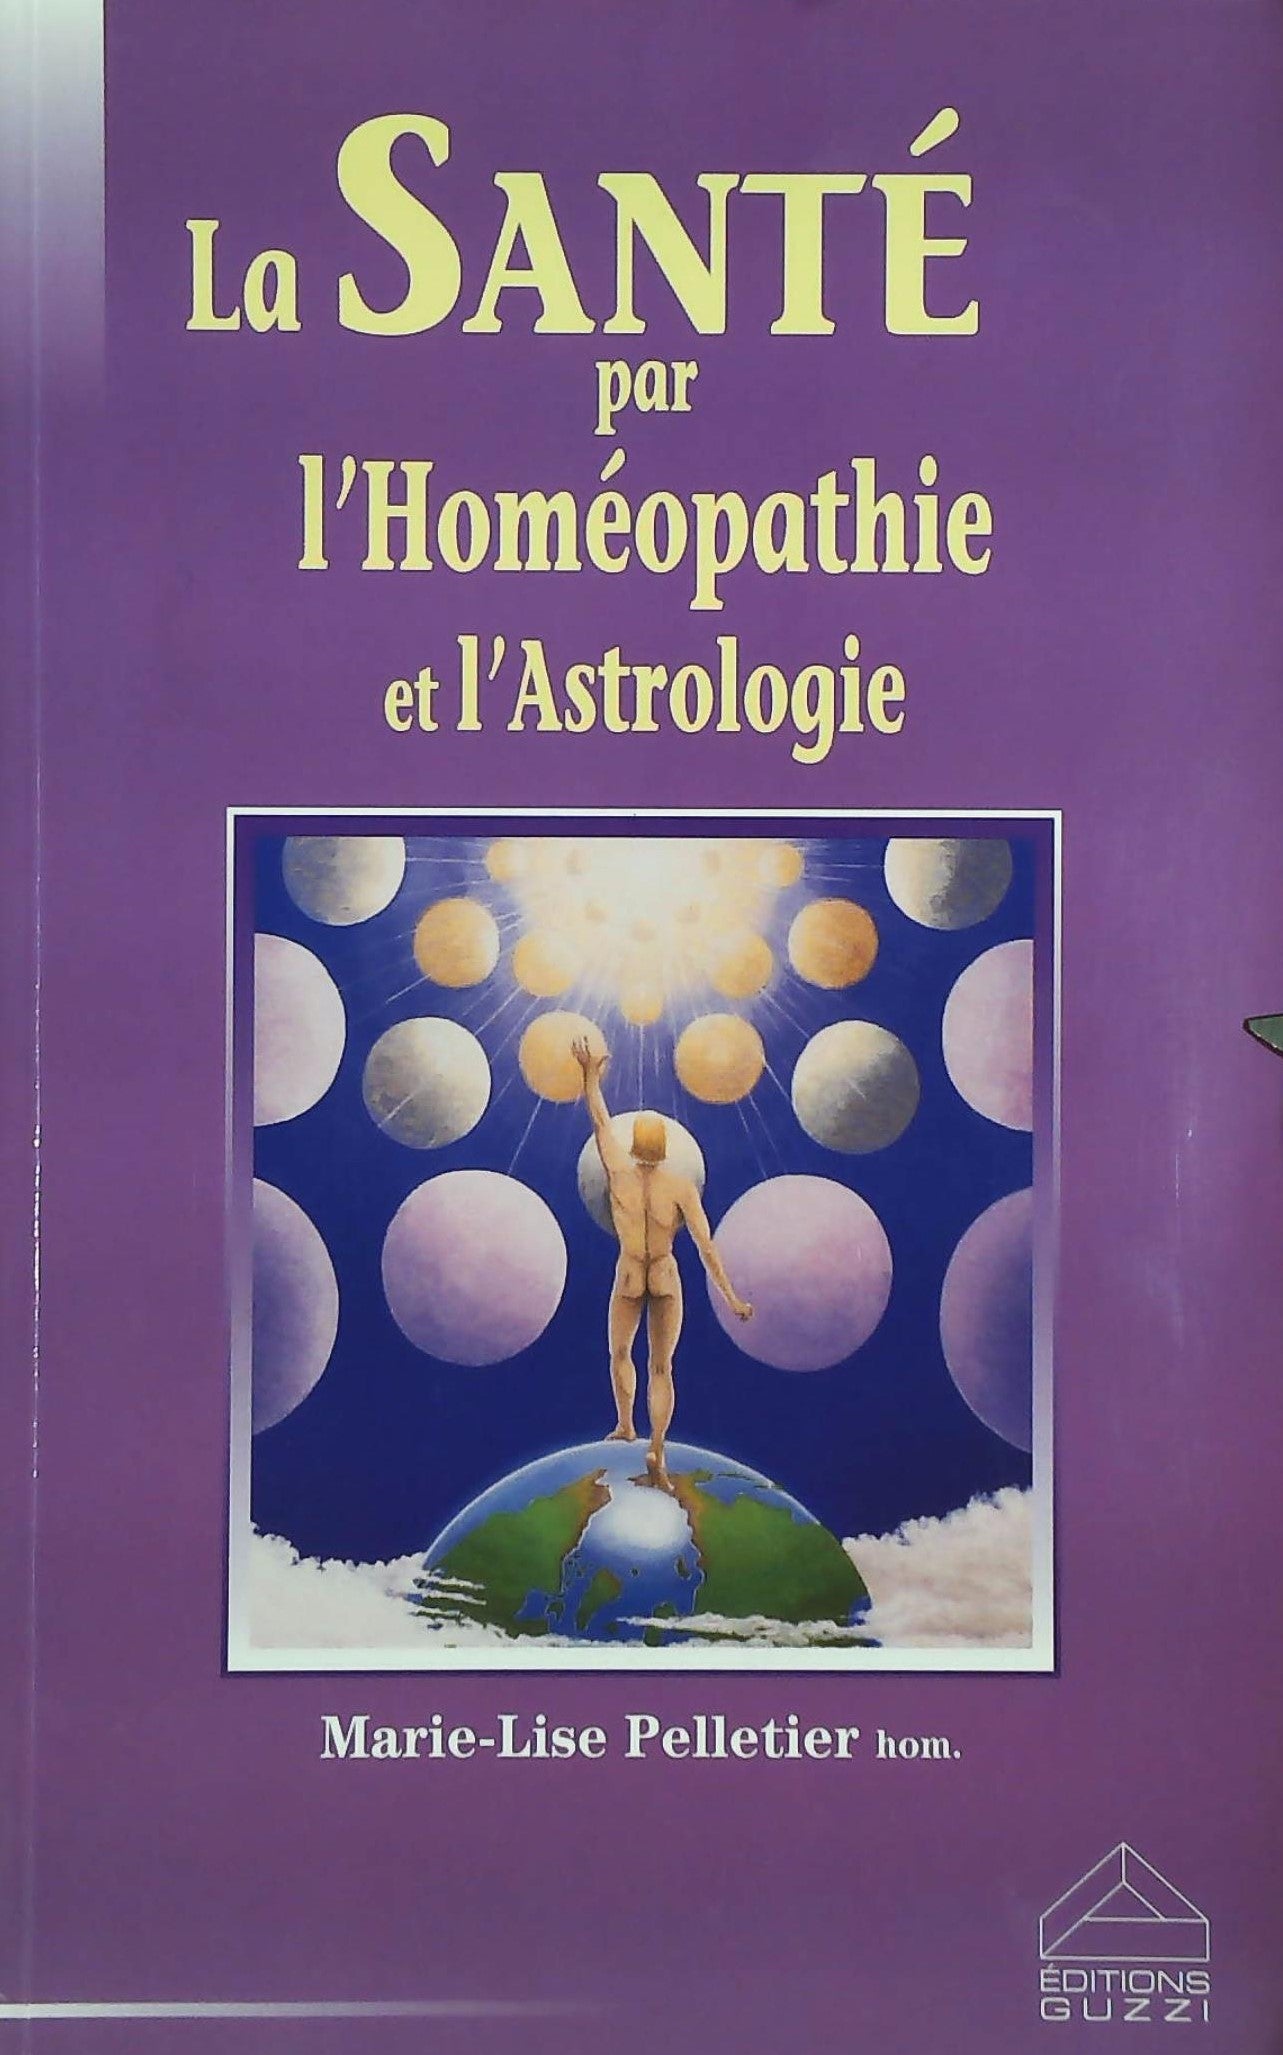 Livre ISBN 2922419053 La santé par l'homéopathie et l'astrologie (Marie-Lise Pelletier)